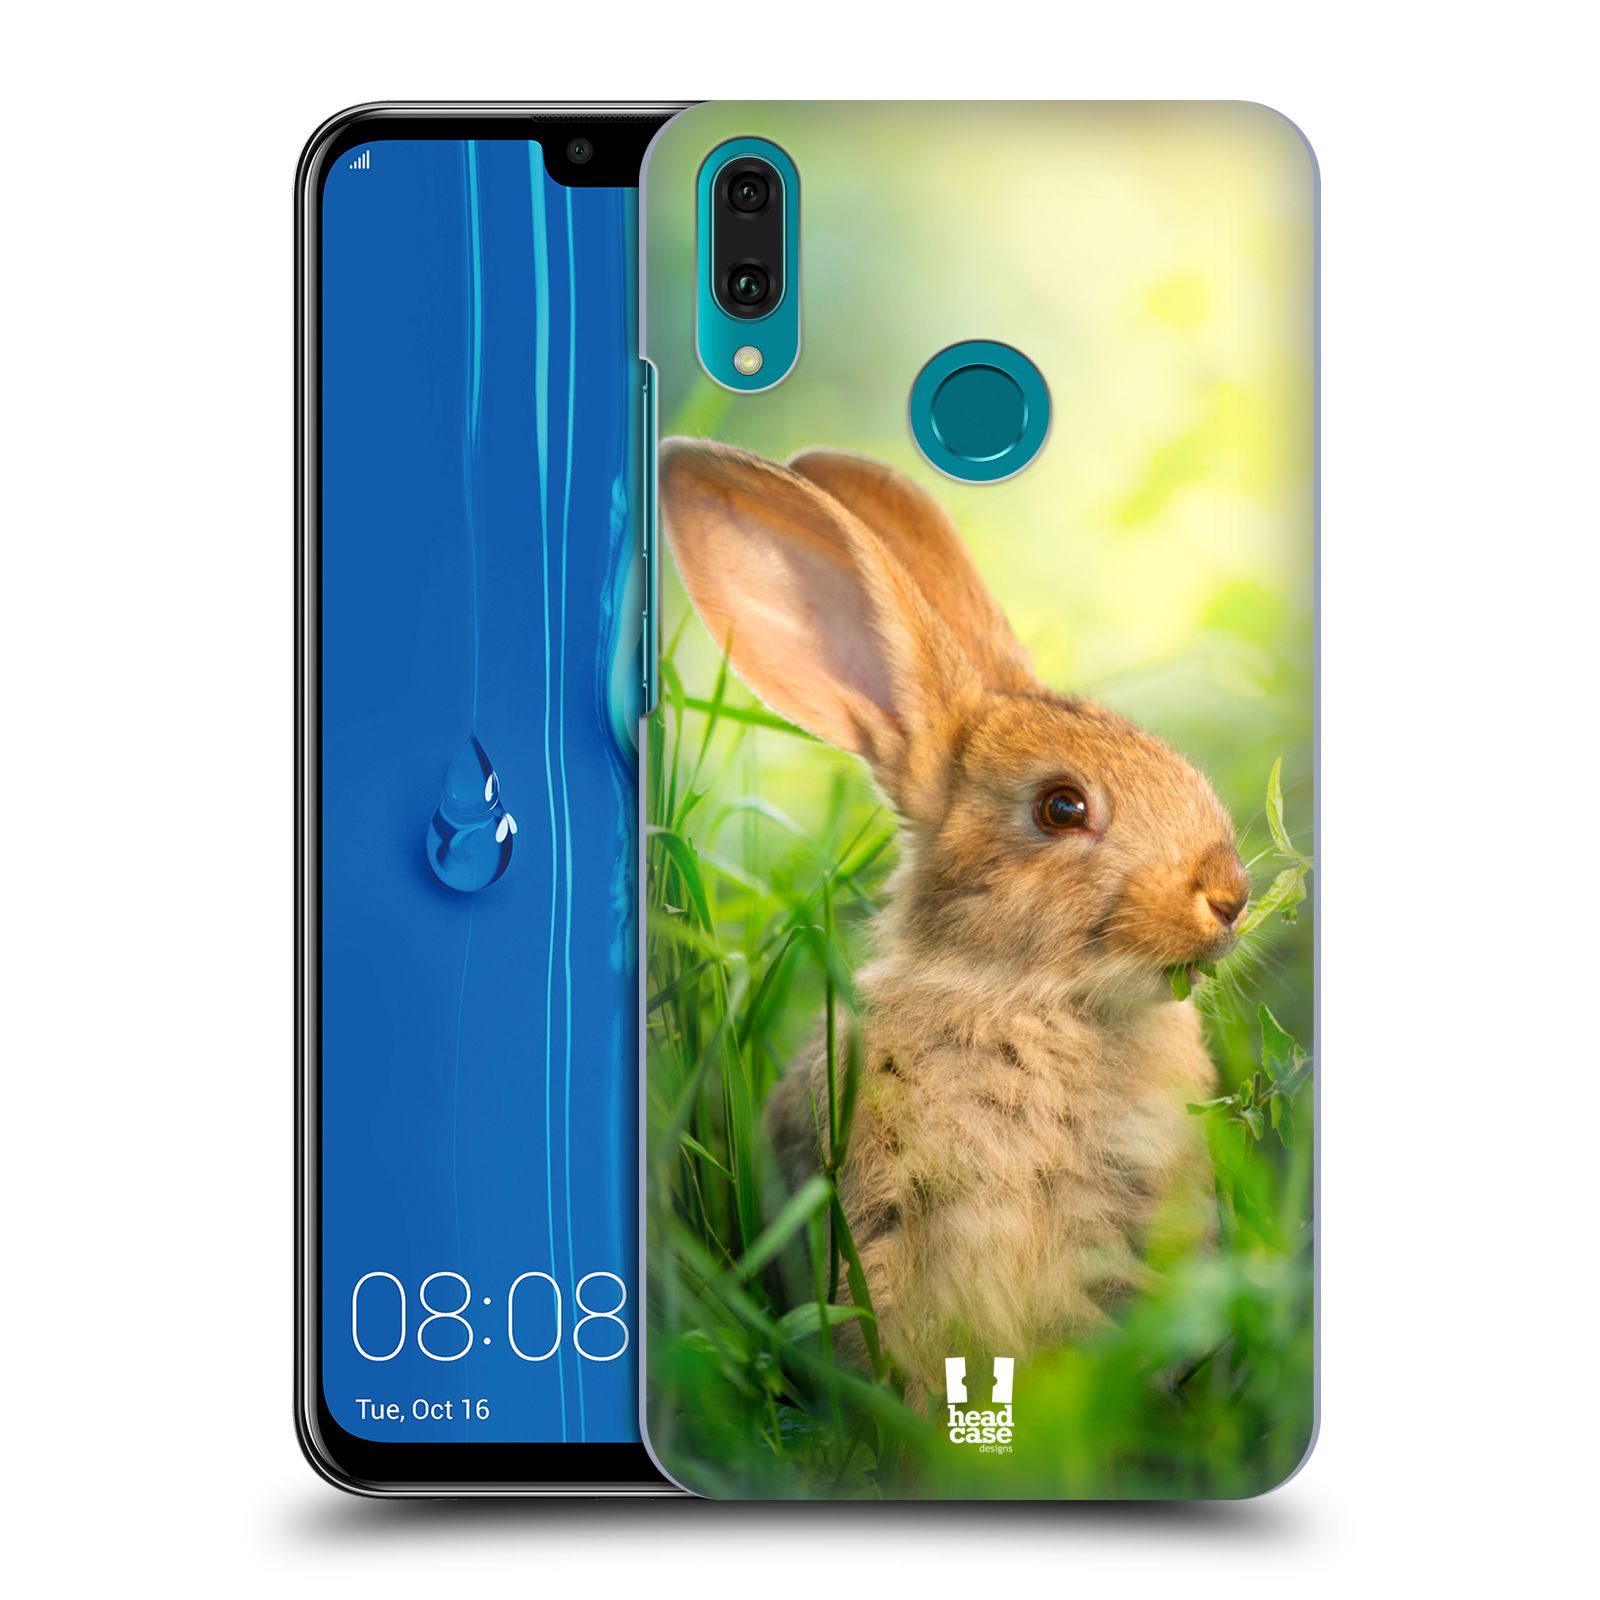 Pouzdro na mobil Huawei Y9 2019 - HEAD CASE - vzor Divočina, Divoký život a zvířata foto ZAJÍČEK V TRÁVĚ ZELENÁ